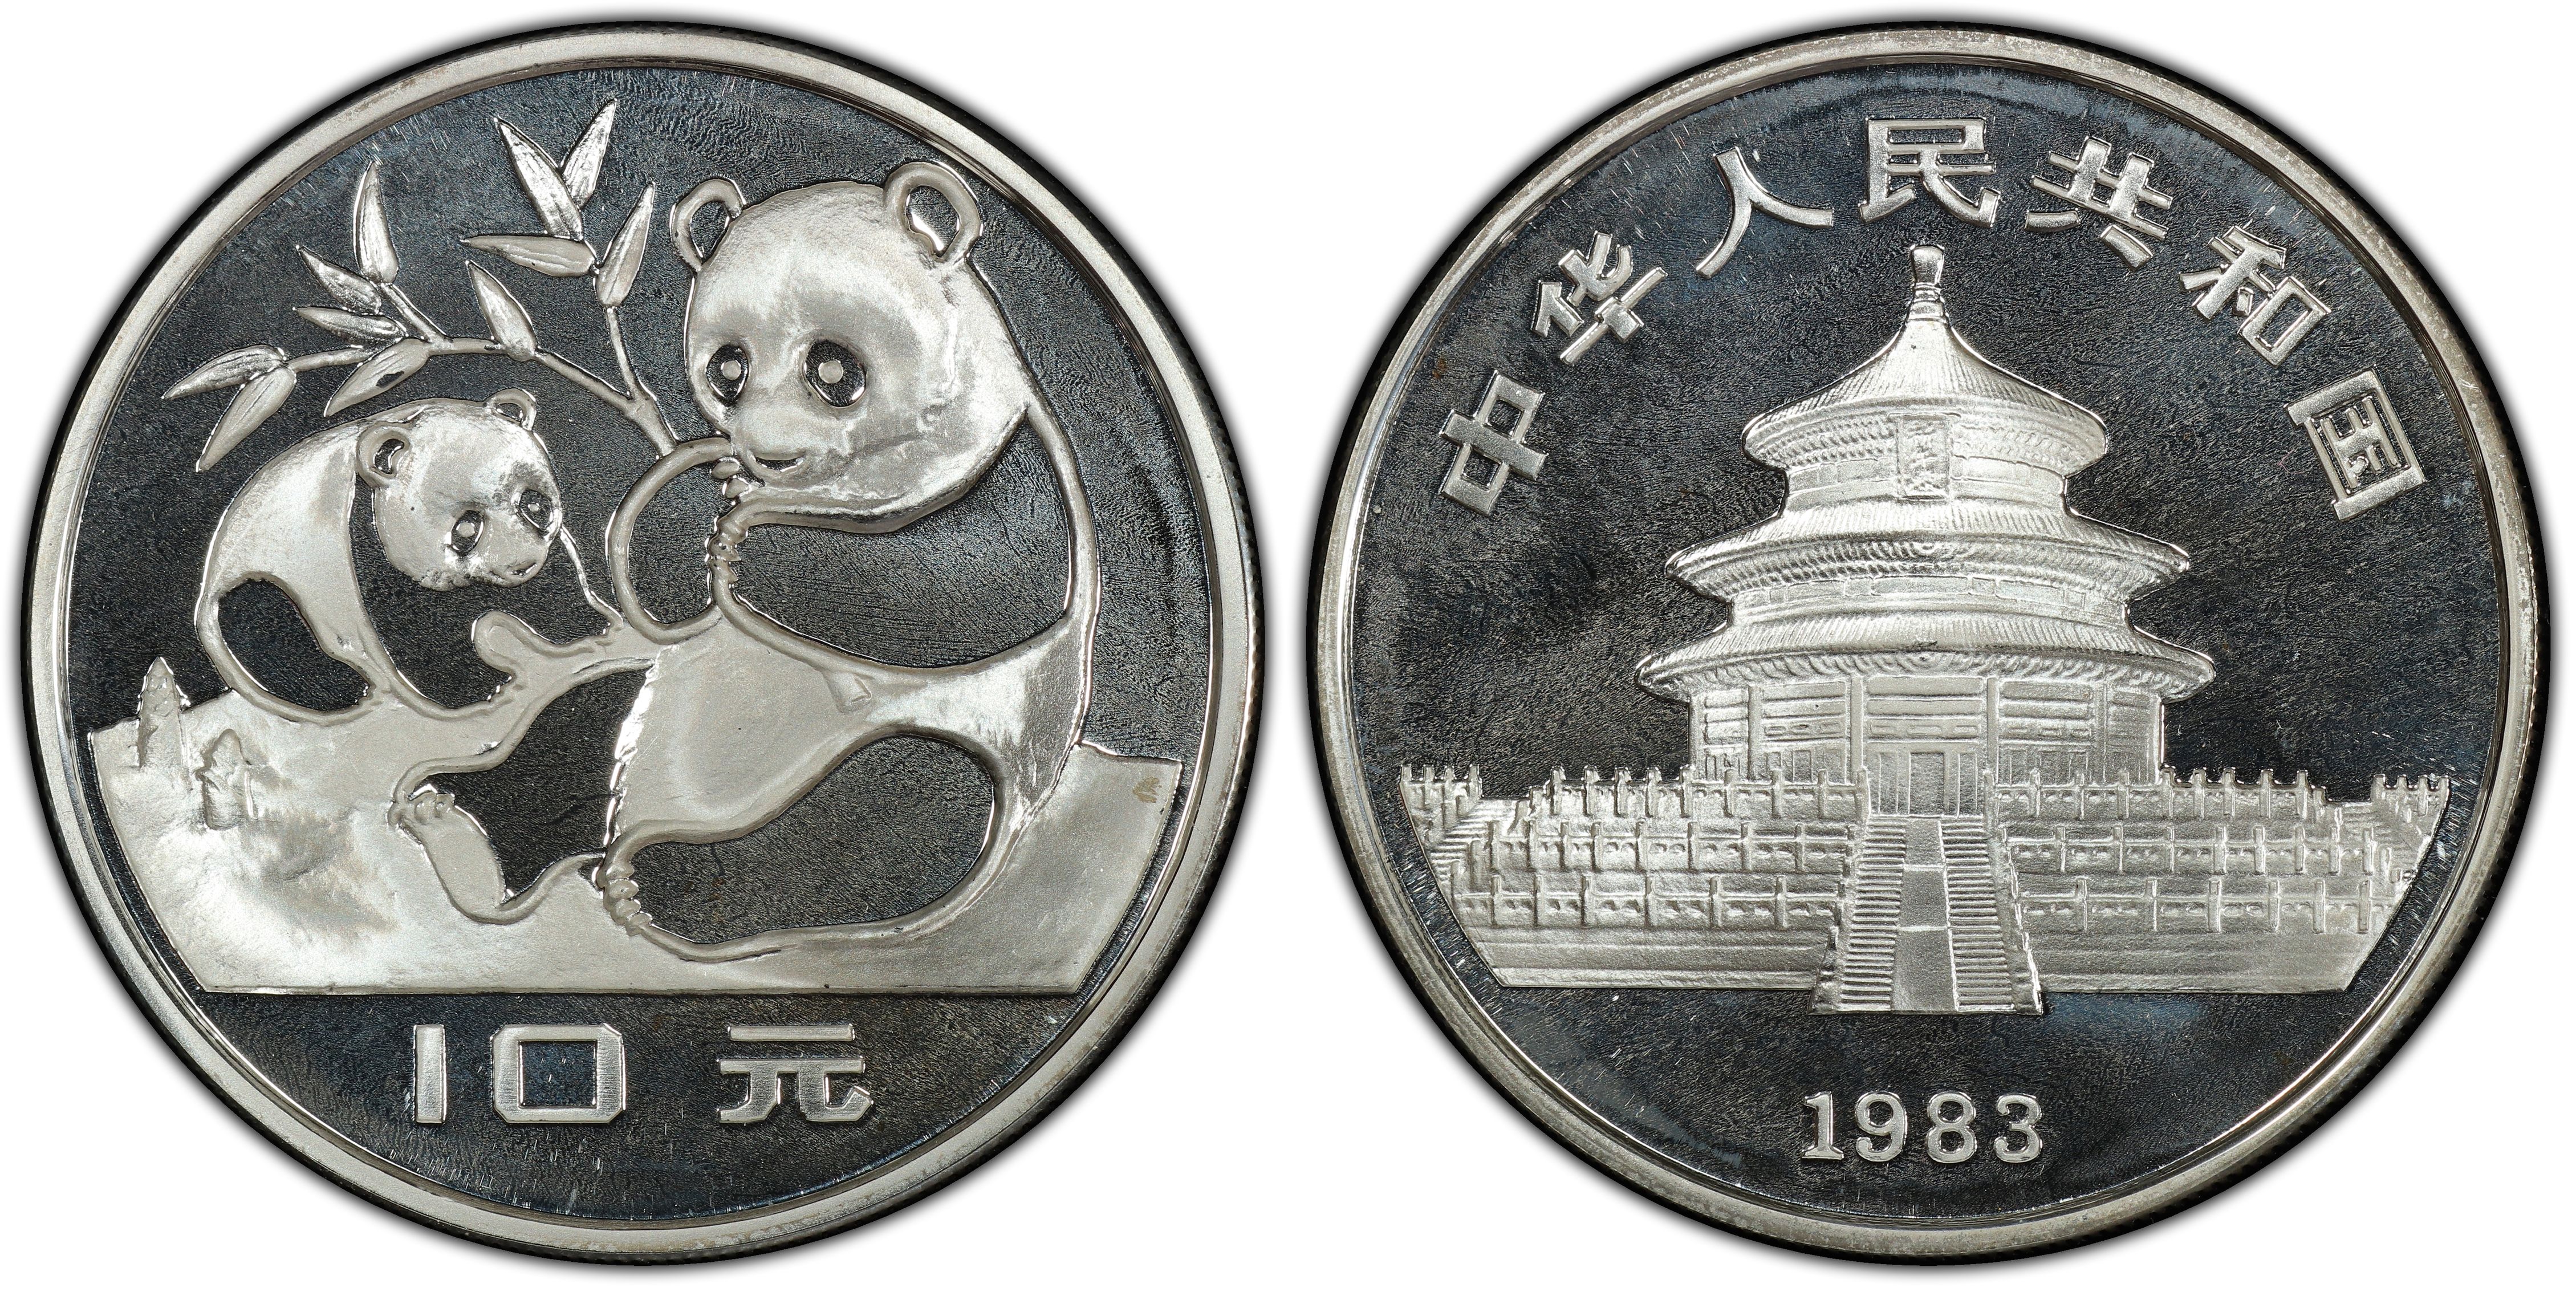 中国 中华人民共和国 贵金属熊猫币 银币 10 圆 valueview64  pcgs